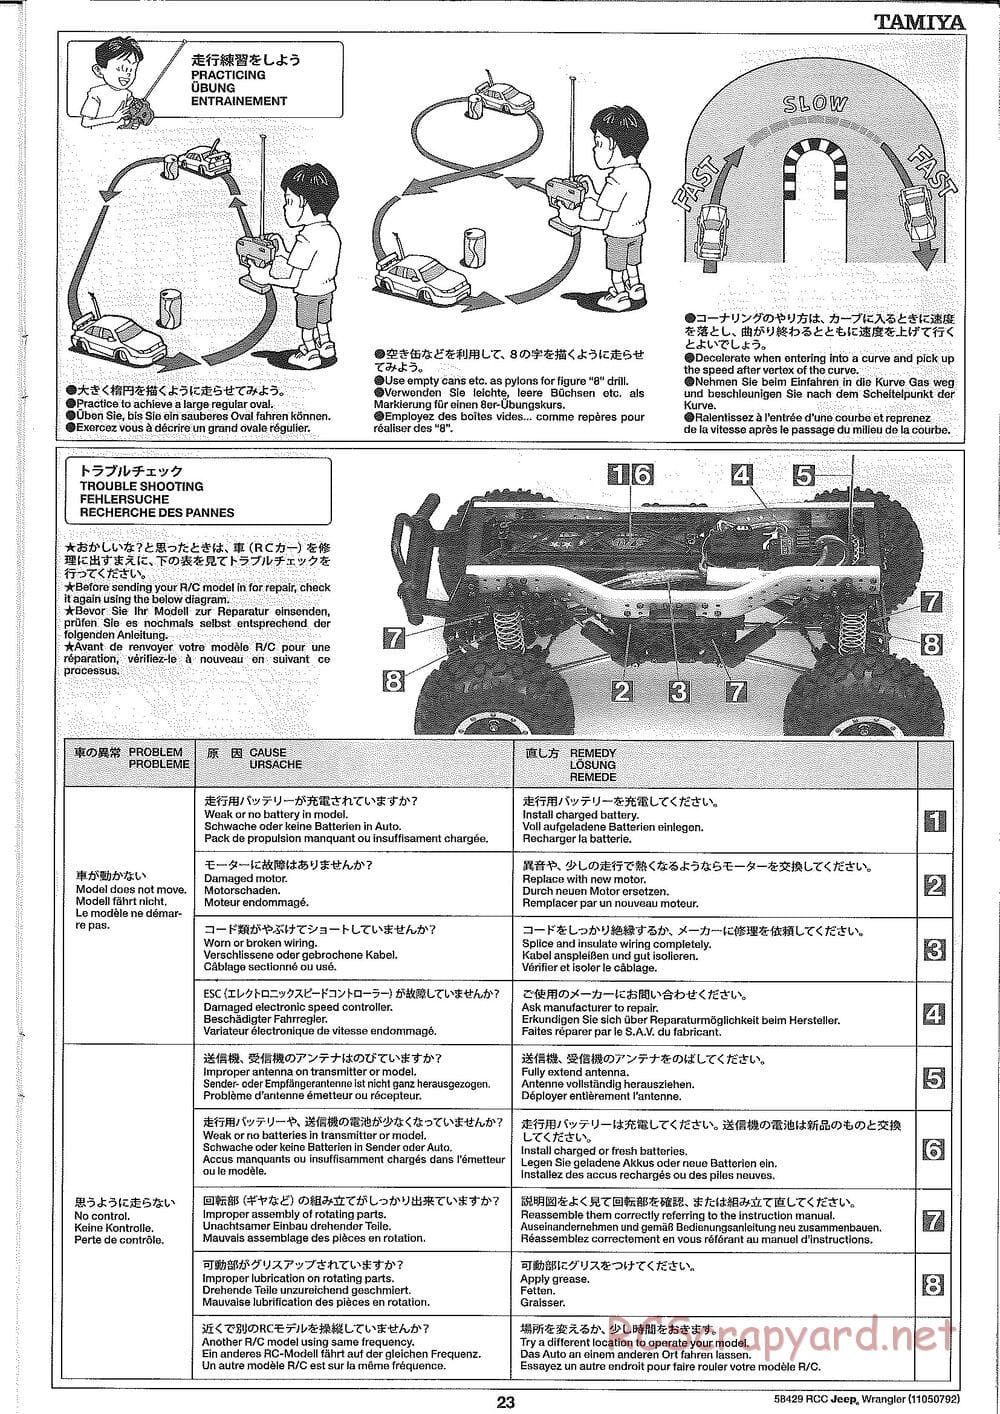 Tamiya - Jeep Wrangler - CR-01 Chassis - Manual - Page 23